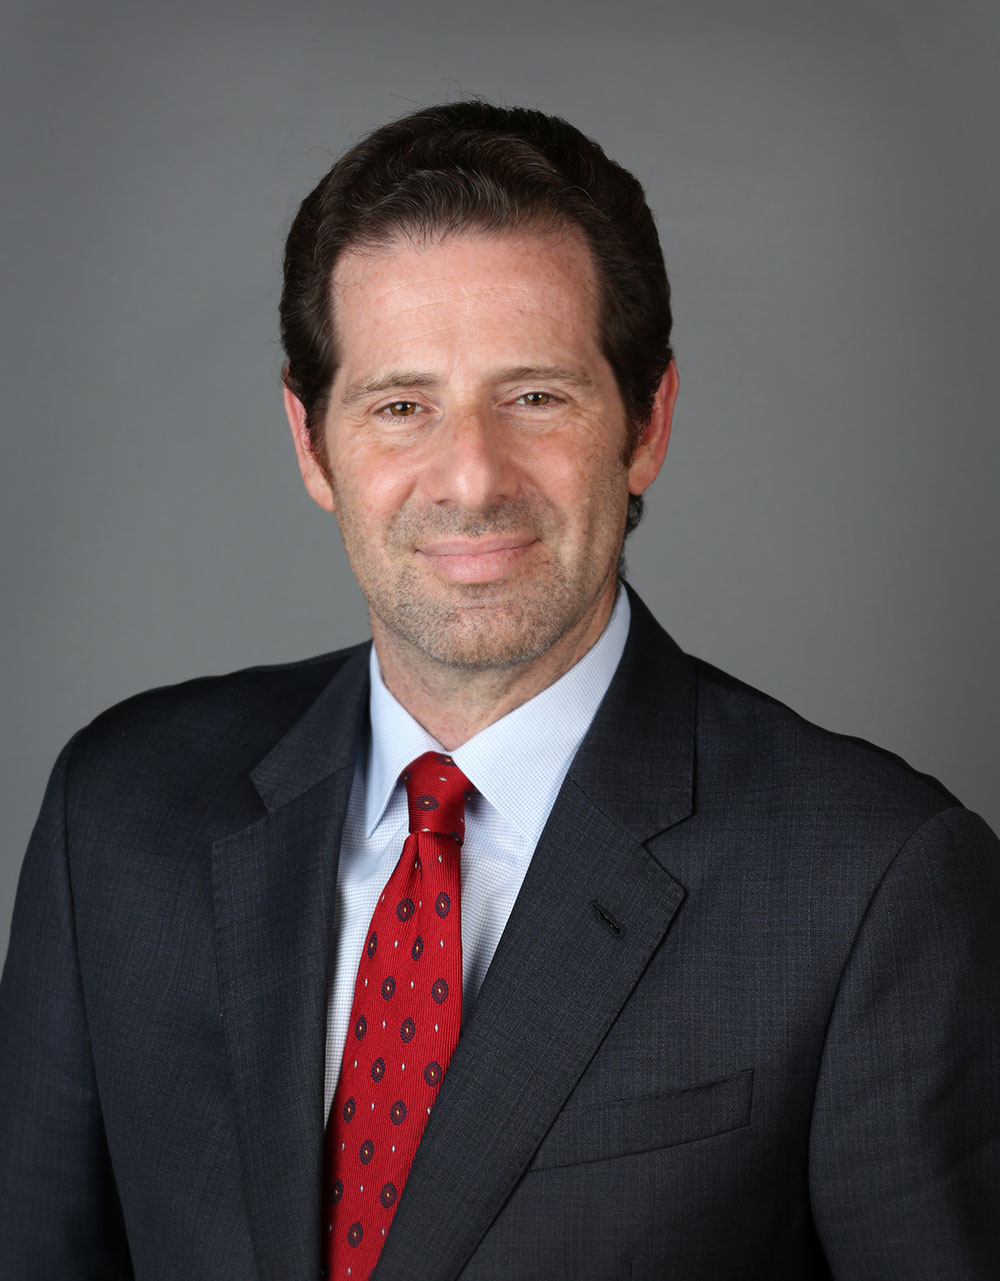 Michael G. Kaplitt, MD, PhD